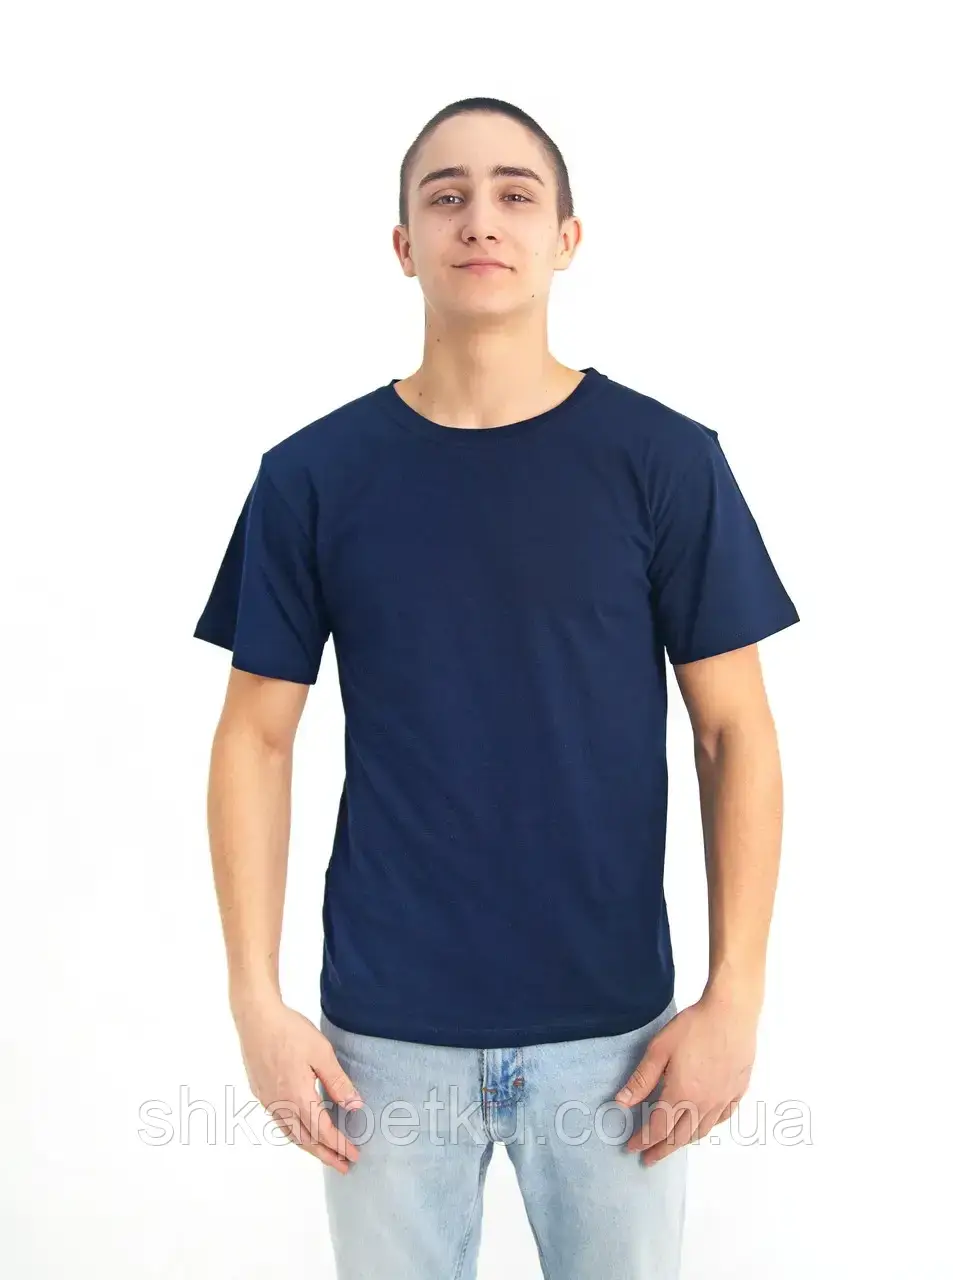 Універсальна бавовняна однотонна футболка МЕРКУРІЙ БАТАЛ унісекс, колір темно-синій